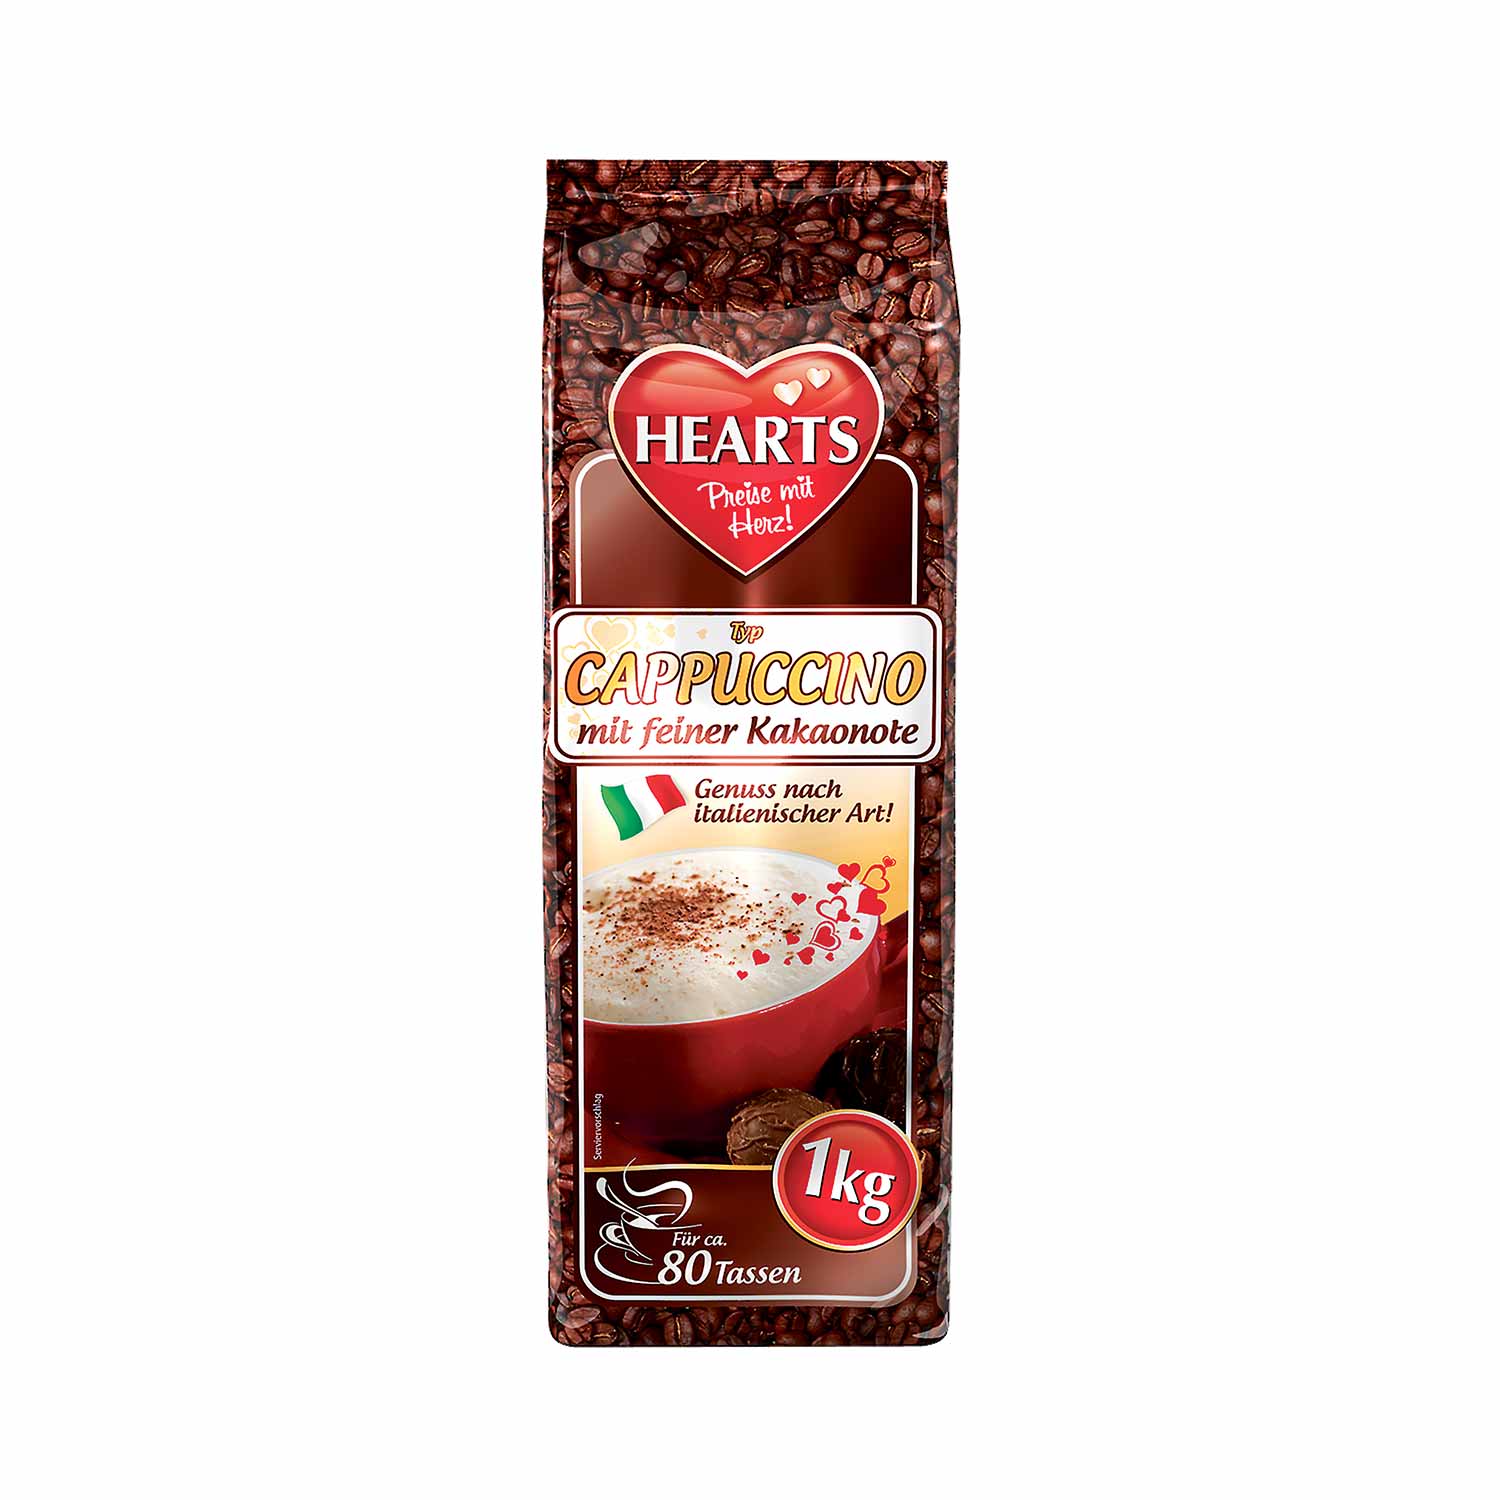 Hearts Cappuccino mit feiner Kakaonote 1 kg für ca. 80 Tassen